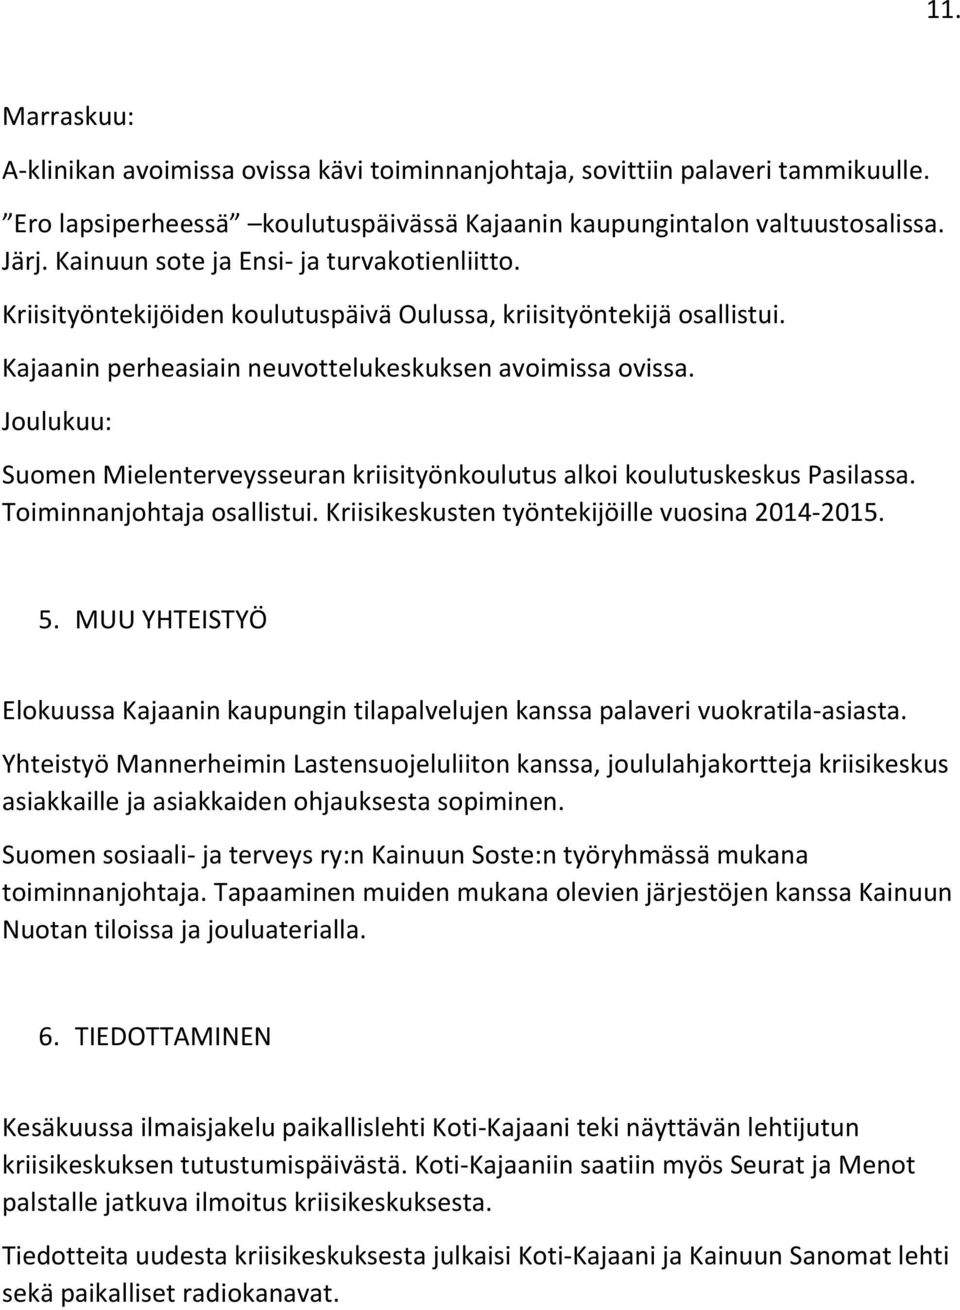 Joulukuu: Suomen Mielenterveysseuran kriisityönkoulutus alkoi koulutuskeskus Pasilassa. Toiminnanjohtaja osallistui. Kriisikeskusten työntekijöille vuosina 2014-2015. 5.